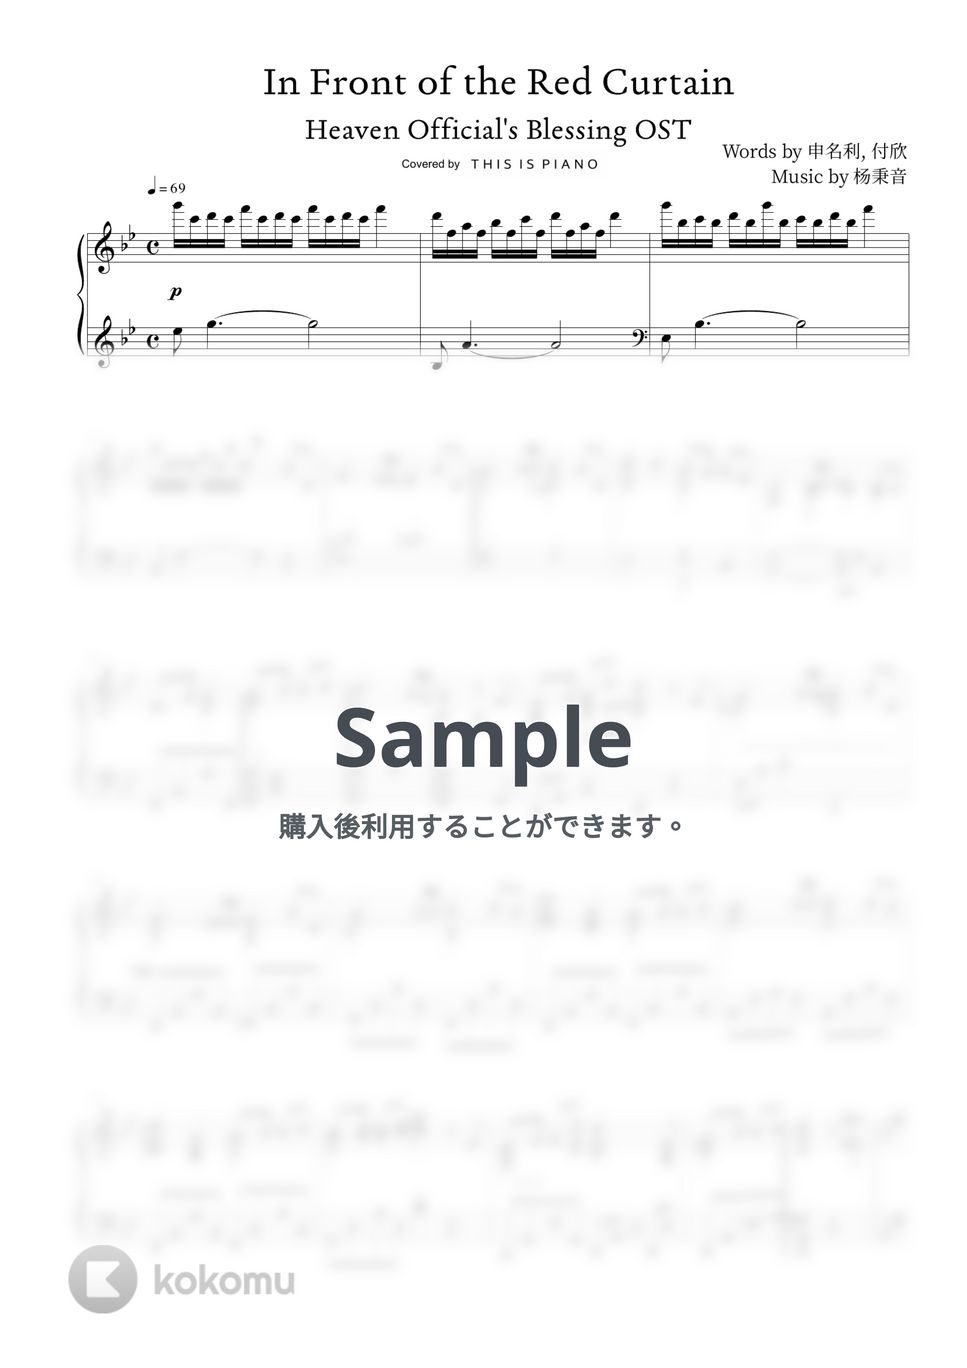 天官赐福 - 紅簾前 by THIS IS PIANO